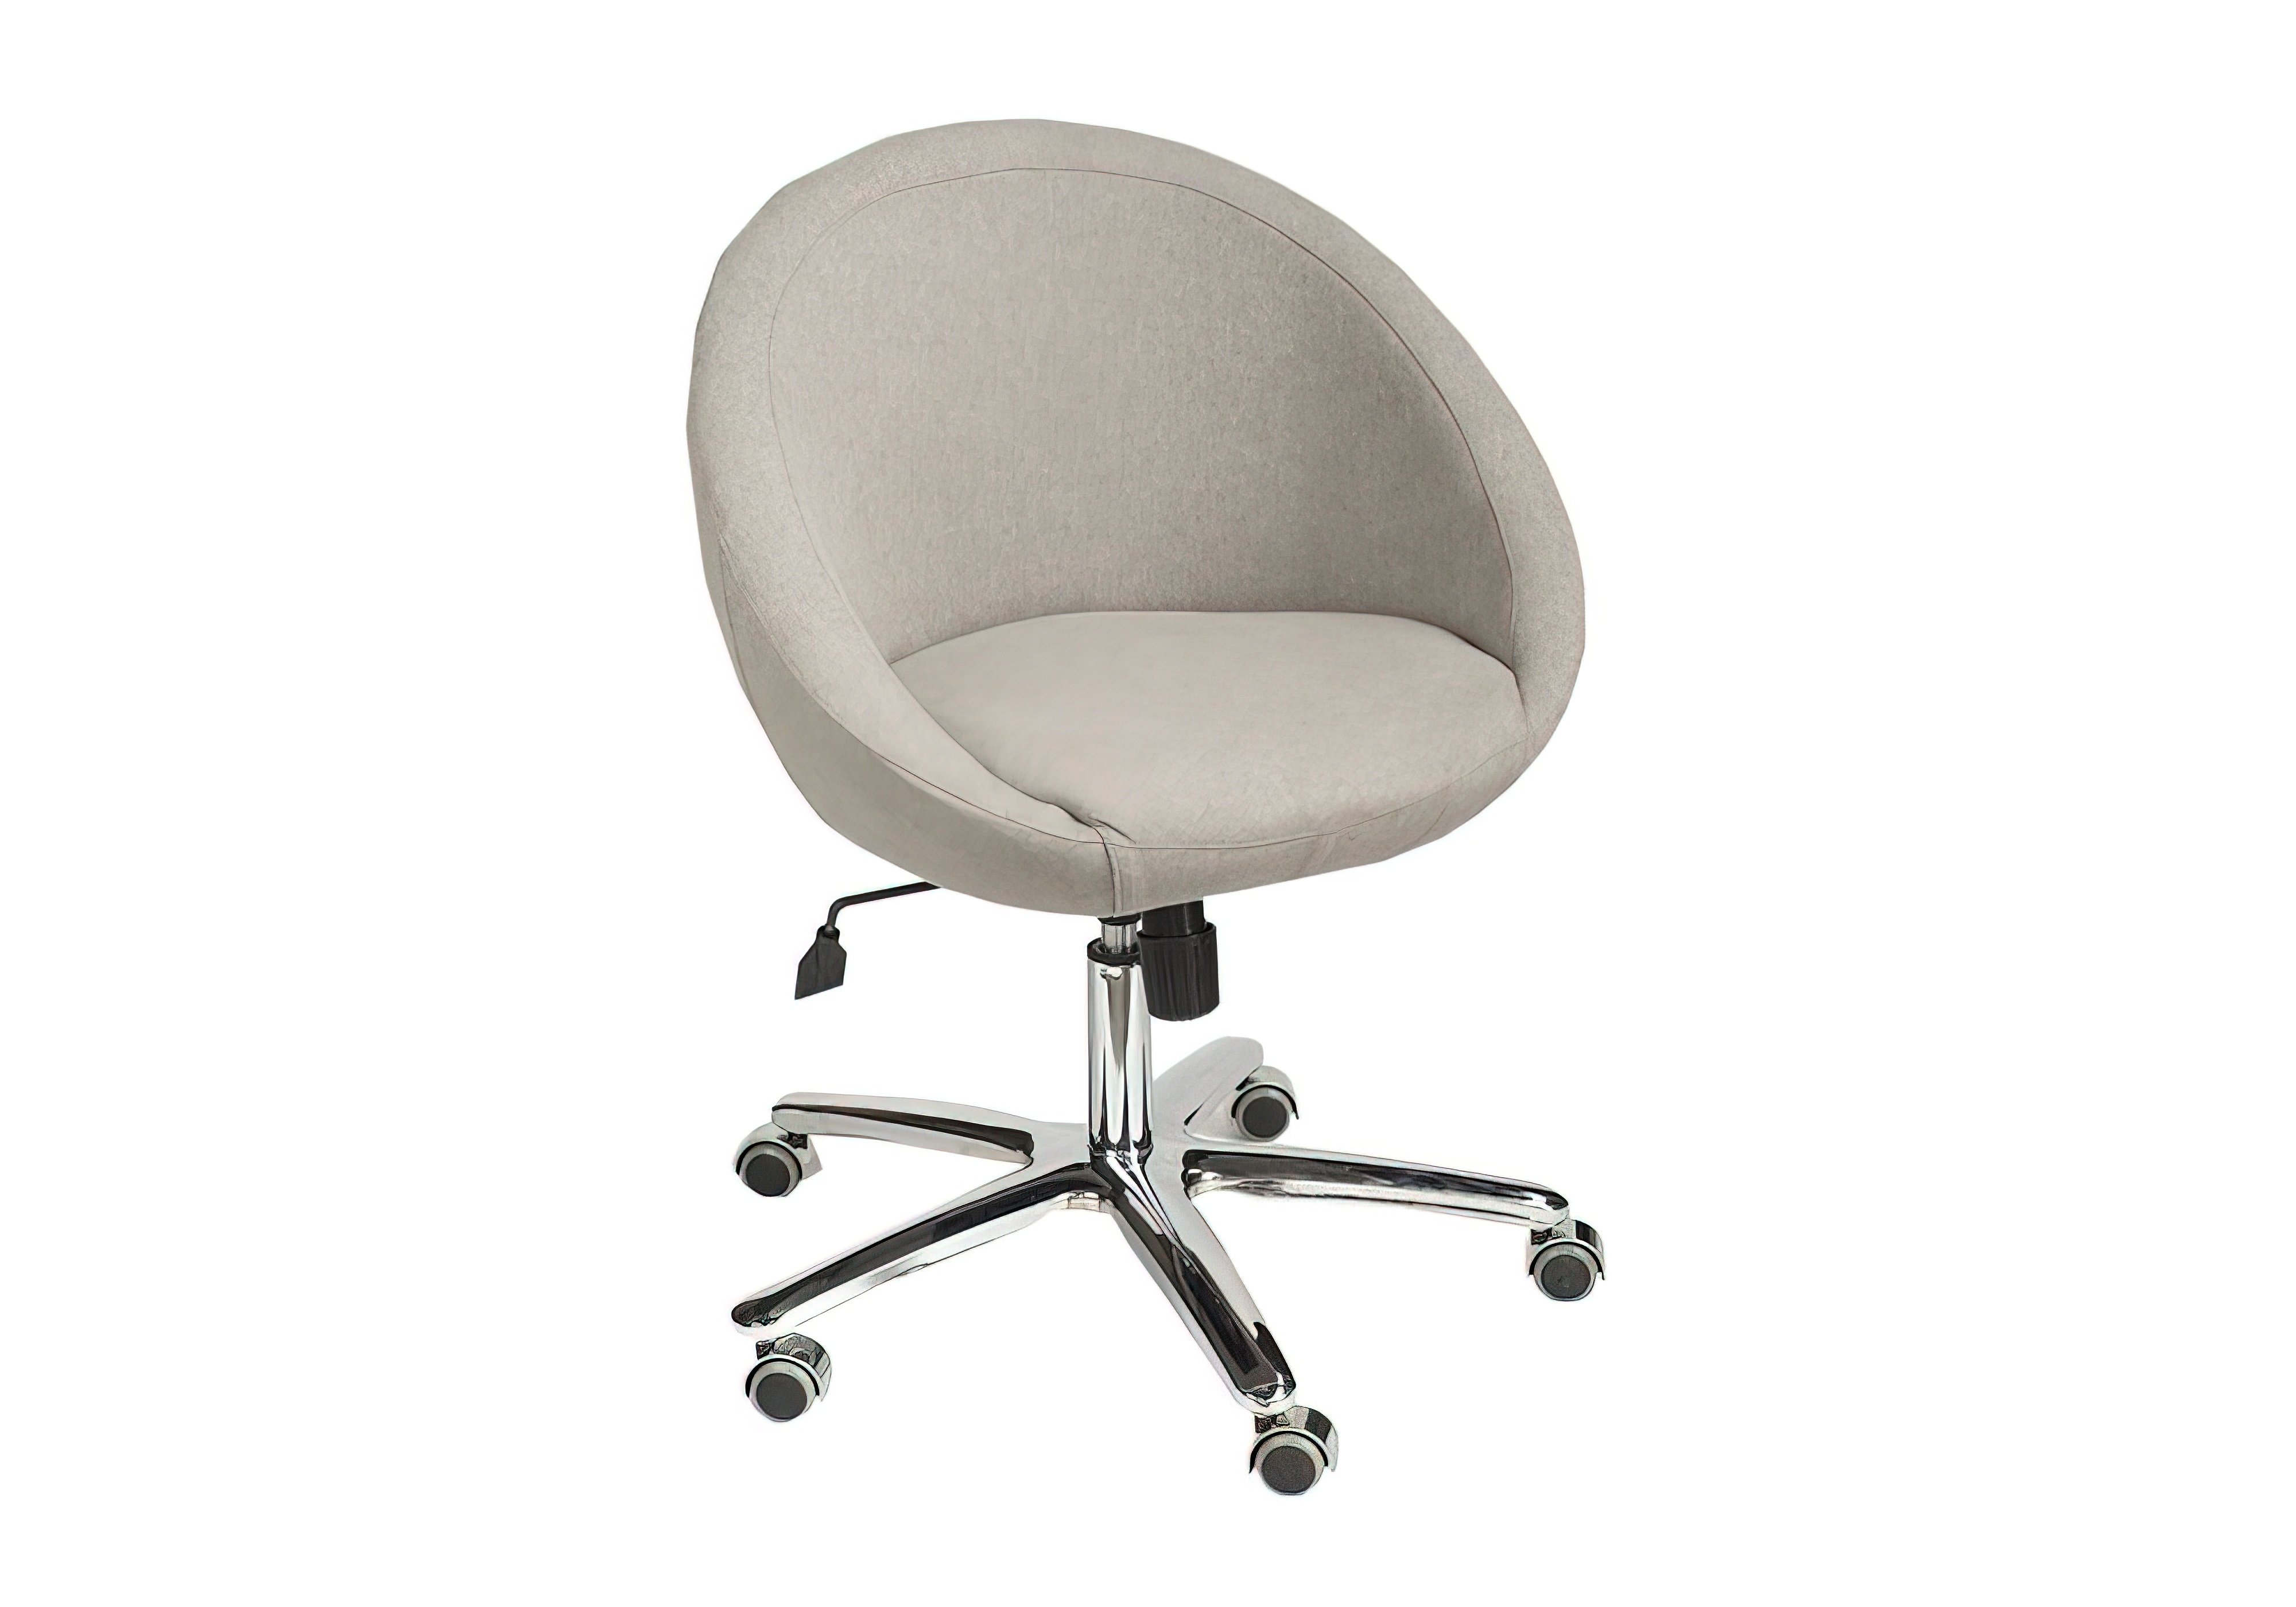  Купить Офисная мягкая мебель Офисное кресло "Марбино Офис" Солано